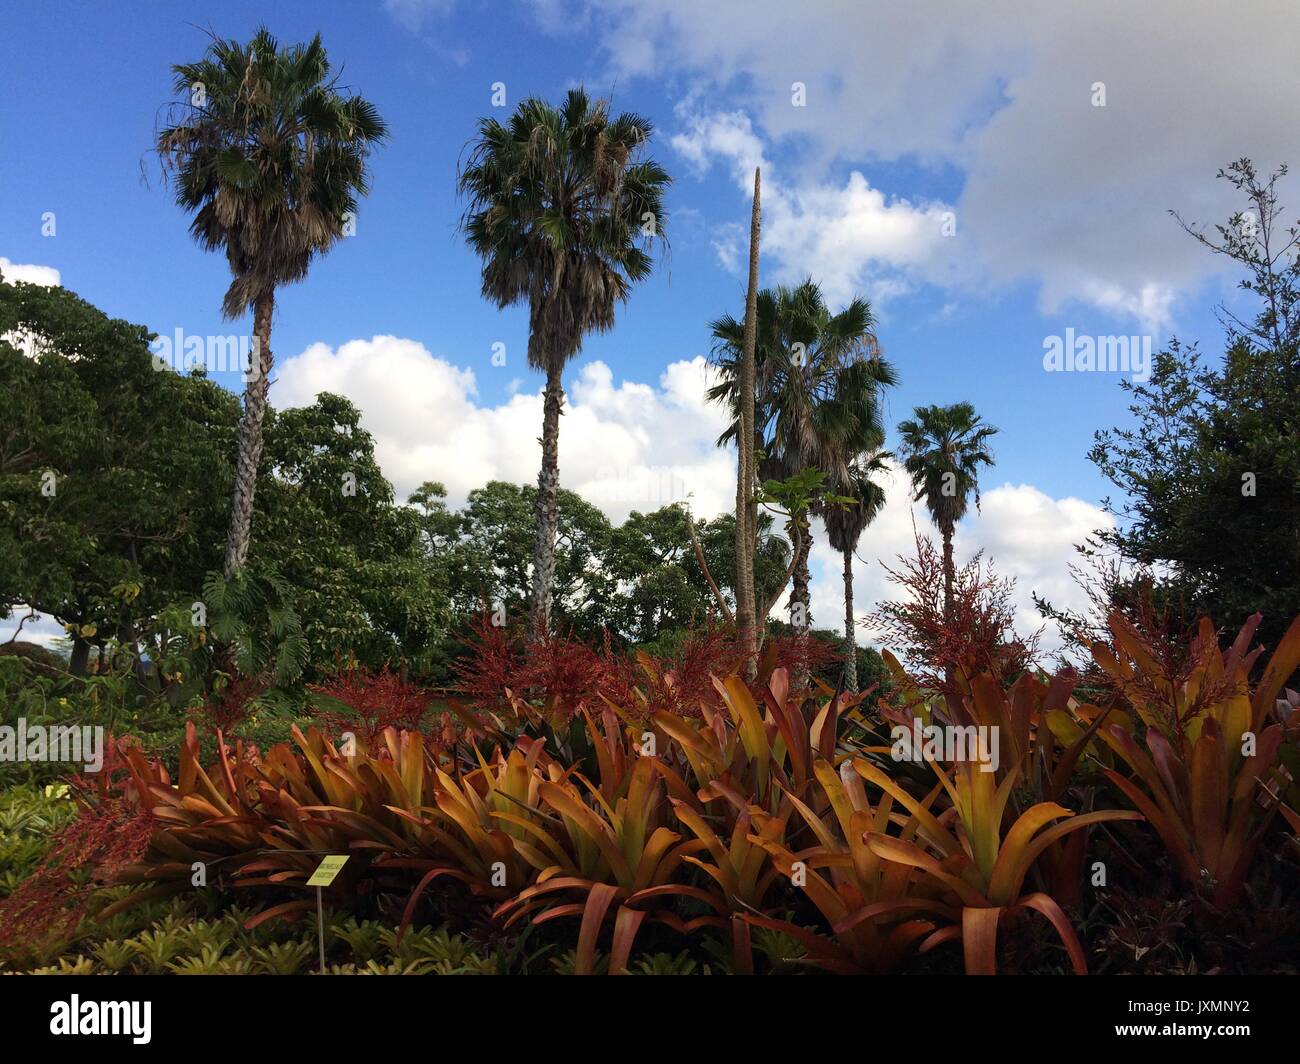 Giant Palm Trees on Oahu Stock Photo